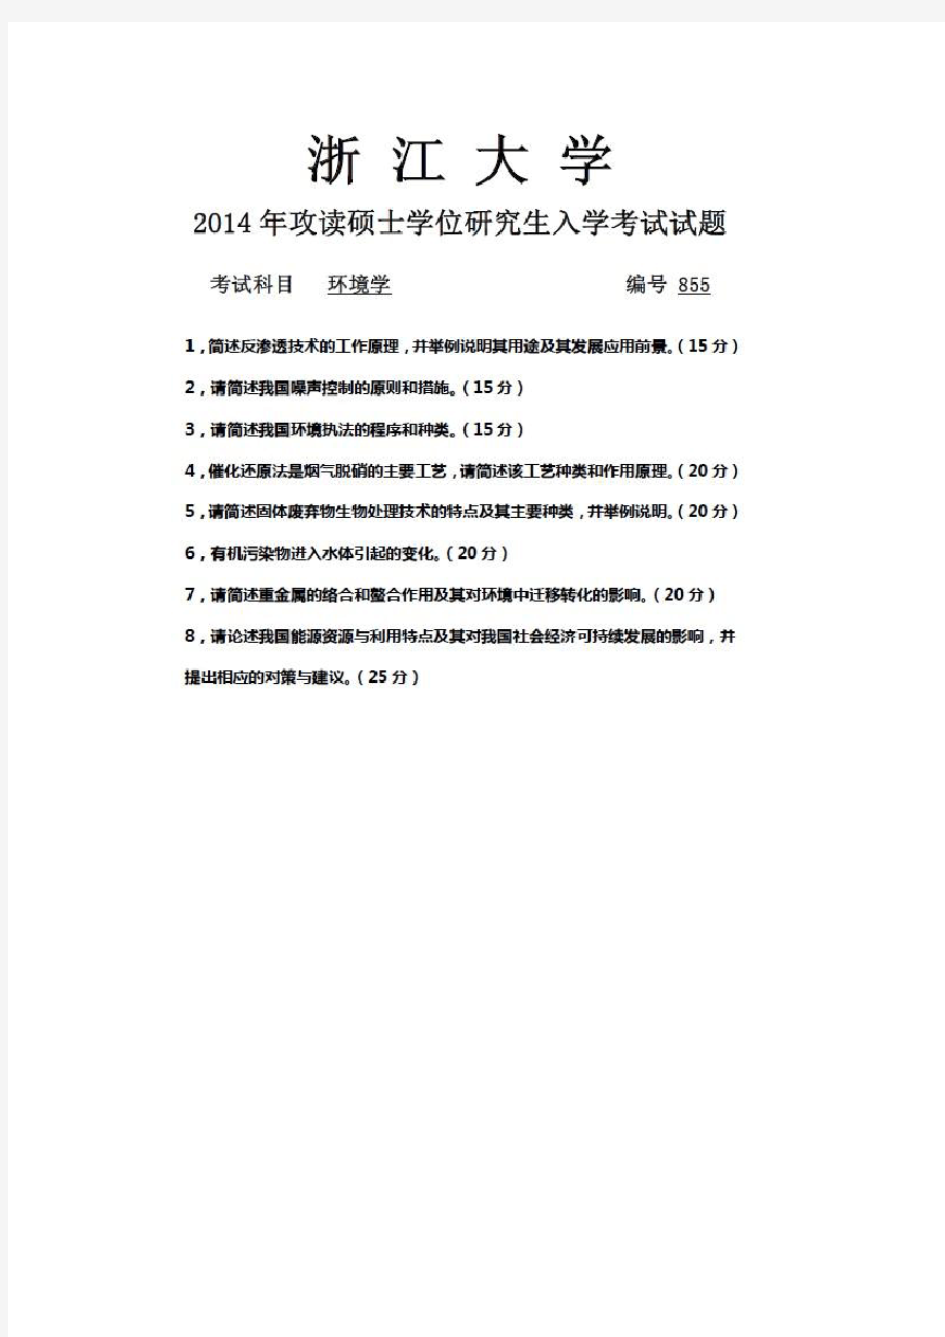 2014年浙江大学考研试题 855环境学